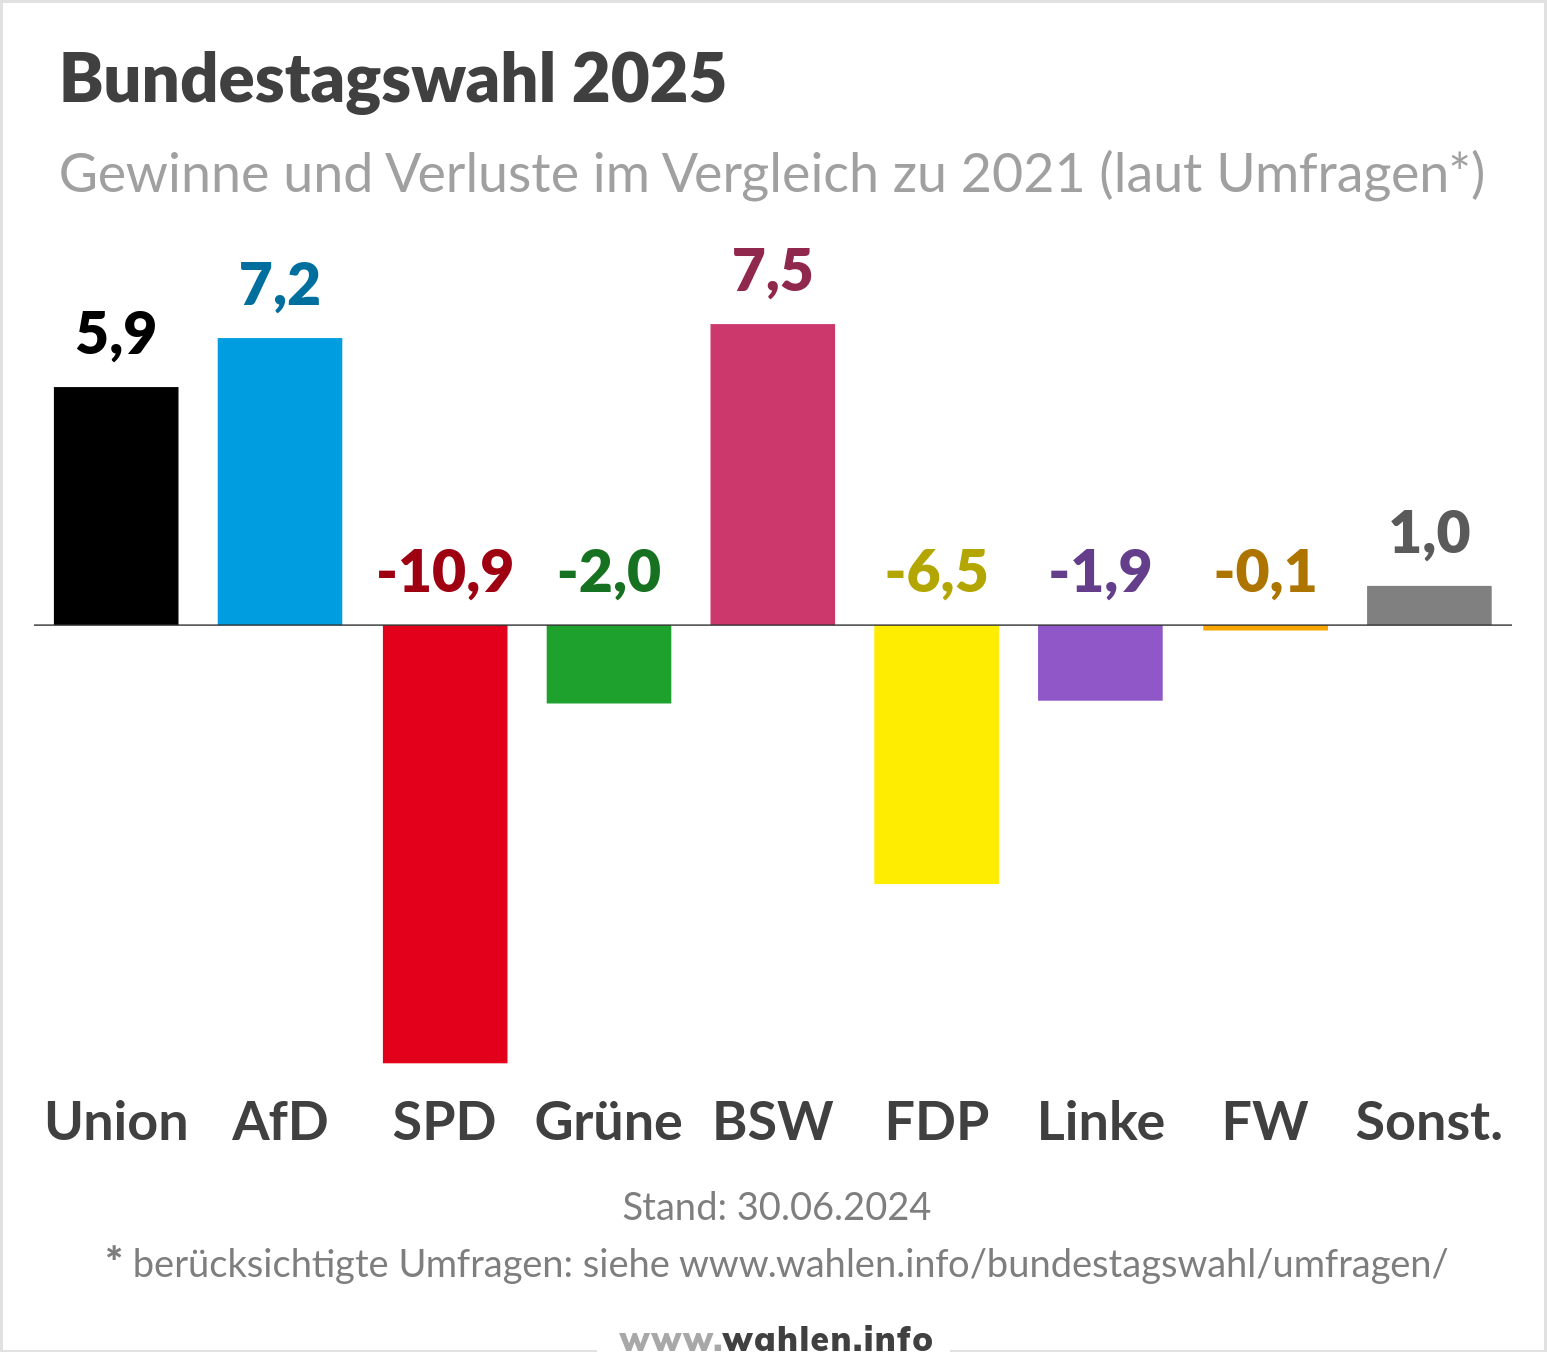 Bundestagswahl 2025 - Umfragen (Prognosen, mit BSW und FW)